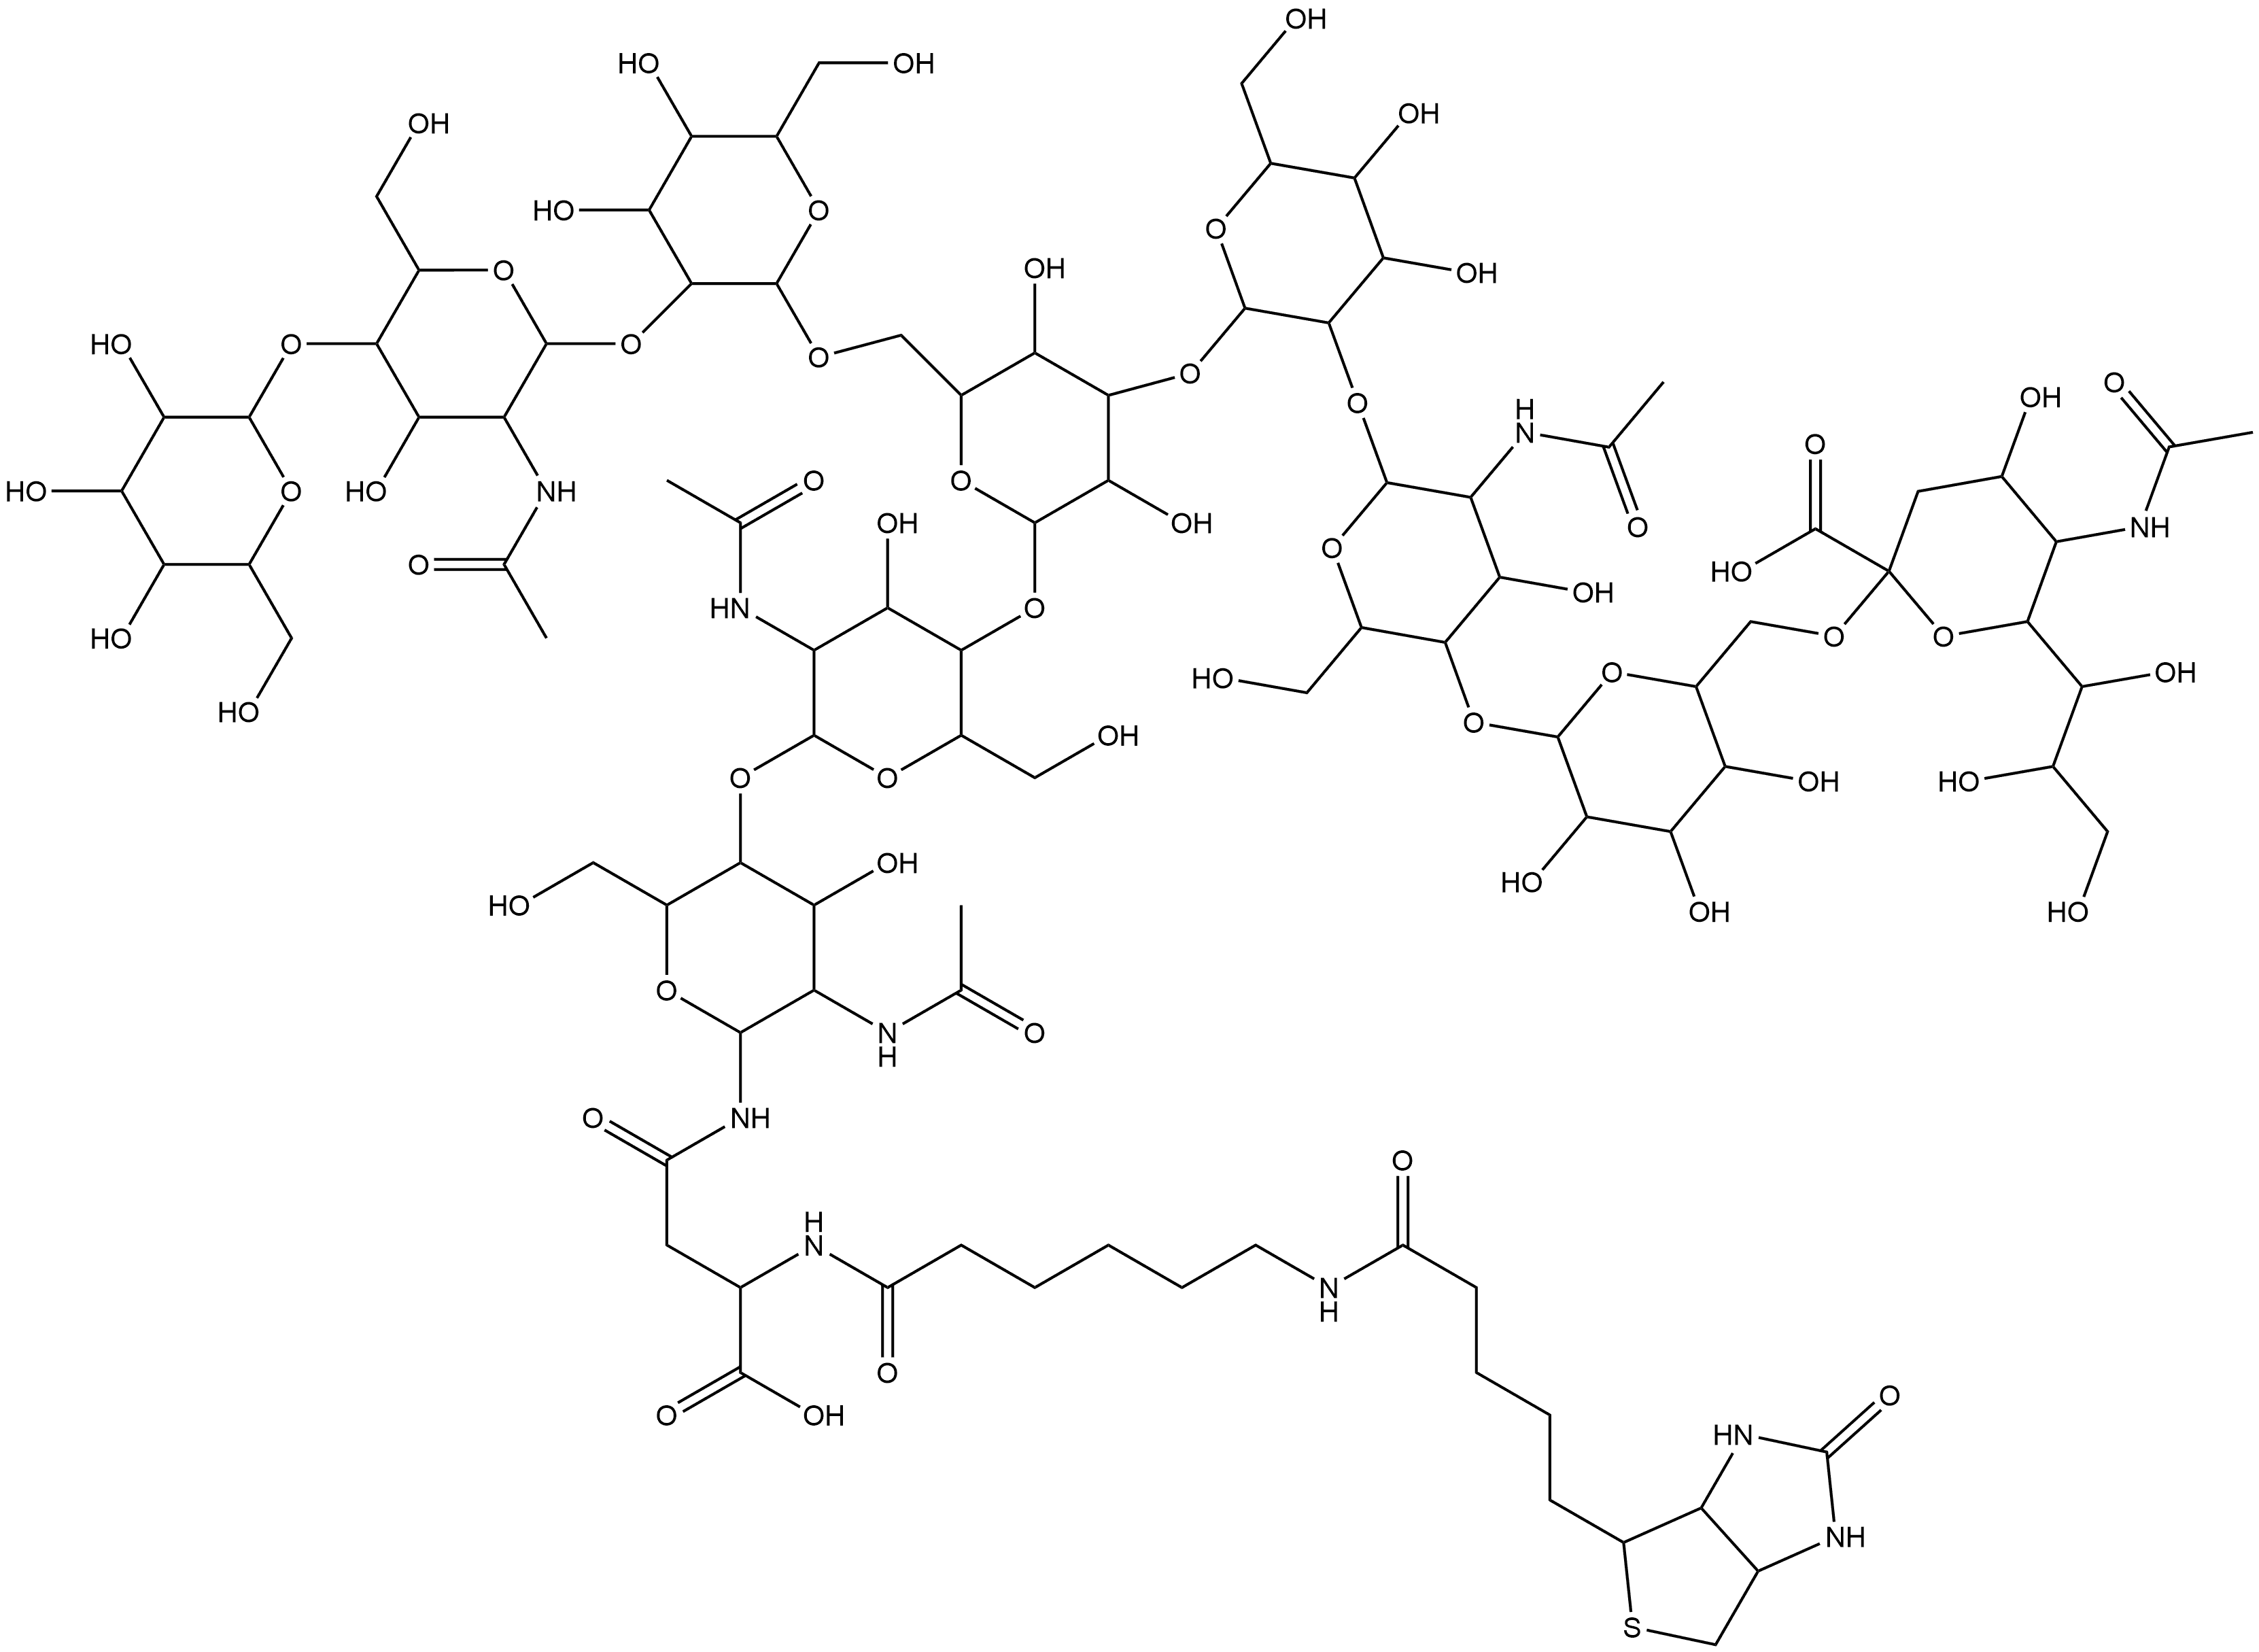 3aS-(3aα,4β,6aα)]-N-[O-(N-acetyl-α-neuraminosyl)-(2→6)-O-β-D-galactopyranosyl-(1→4)-O-2-(acetylamino)-2-deoxy-β-D-glucopyranosyl-(1→2)-O-α-D-mannopyranosyl-(1→3)-O-[O-β-D-galactopyranosyl-(1→4)-O-2-(acetylamino)-2-deoxy-β-D-glucopyranosyl-(1→2)-α-D-mannopyranosyl-(1→6)]-O-β-D-mannopyranosyl-(1→4)-O-2-(acetylamino)-2-deoxy-β-D-glucopyranosyl-(1→4)-2-(acetylamino)-2-deoxy-β-D-glucopyranosyl]-N2-[6-[[5-(hexahydro-2-oxo-1H-thieno[3,4-d]imidazol-4-yl)-1-oxopentyl]amino]-1-oxohexyl]-L-Asparagine Structure